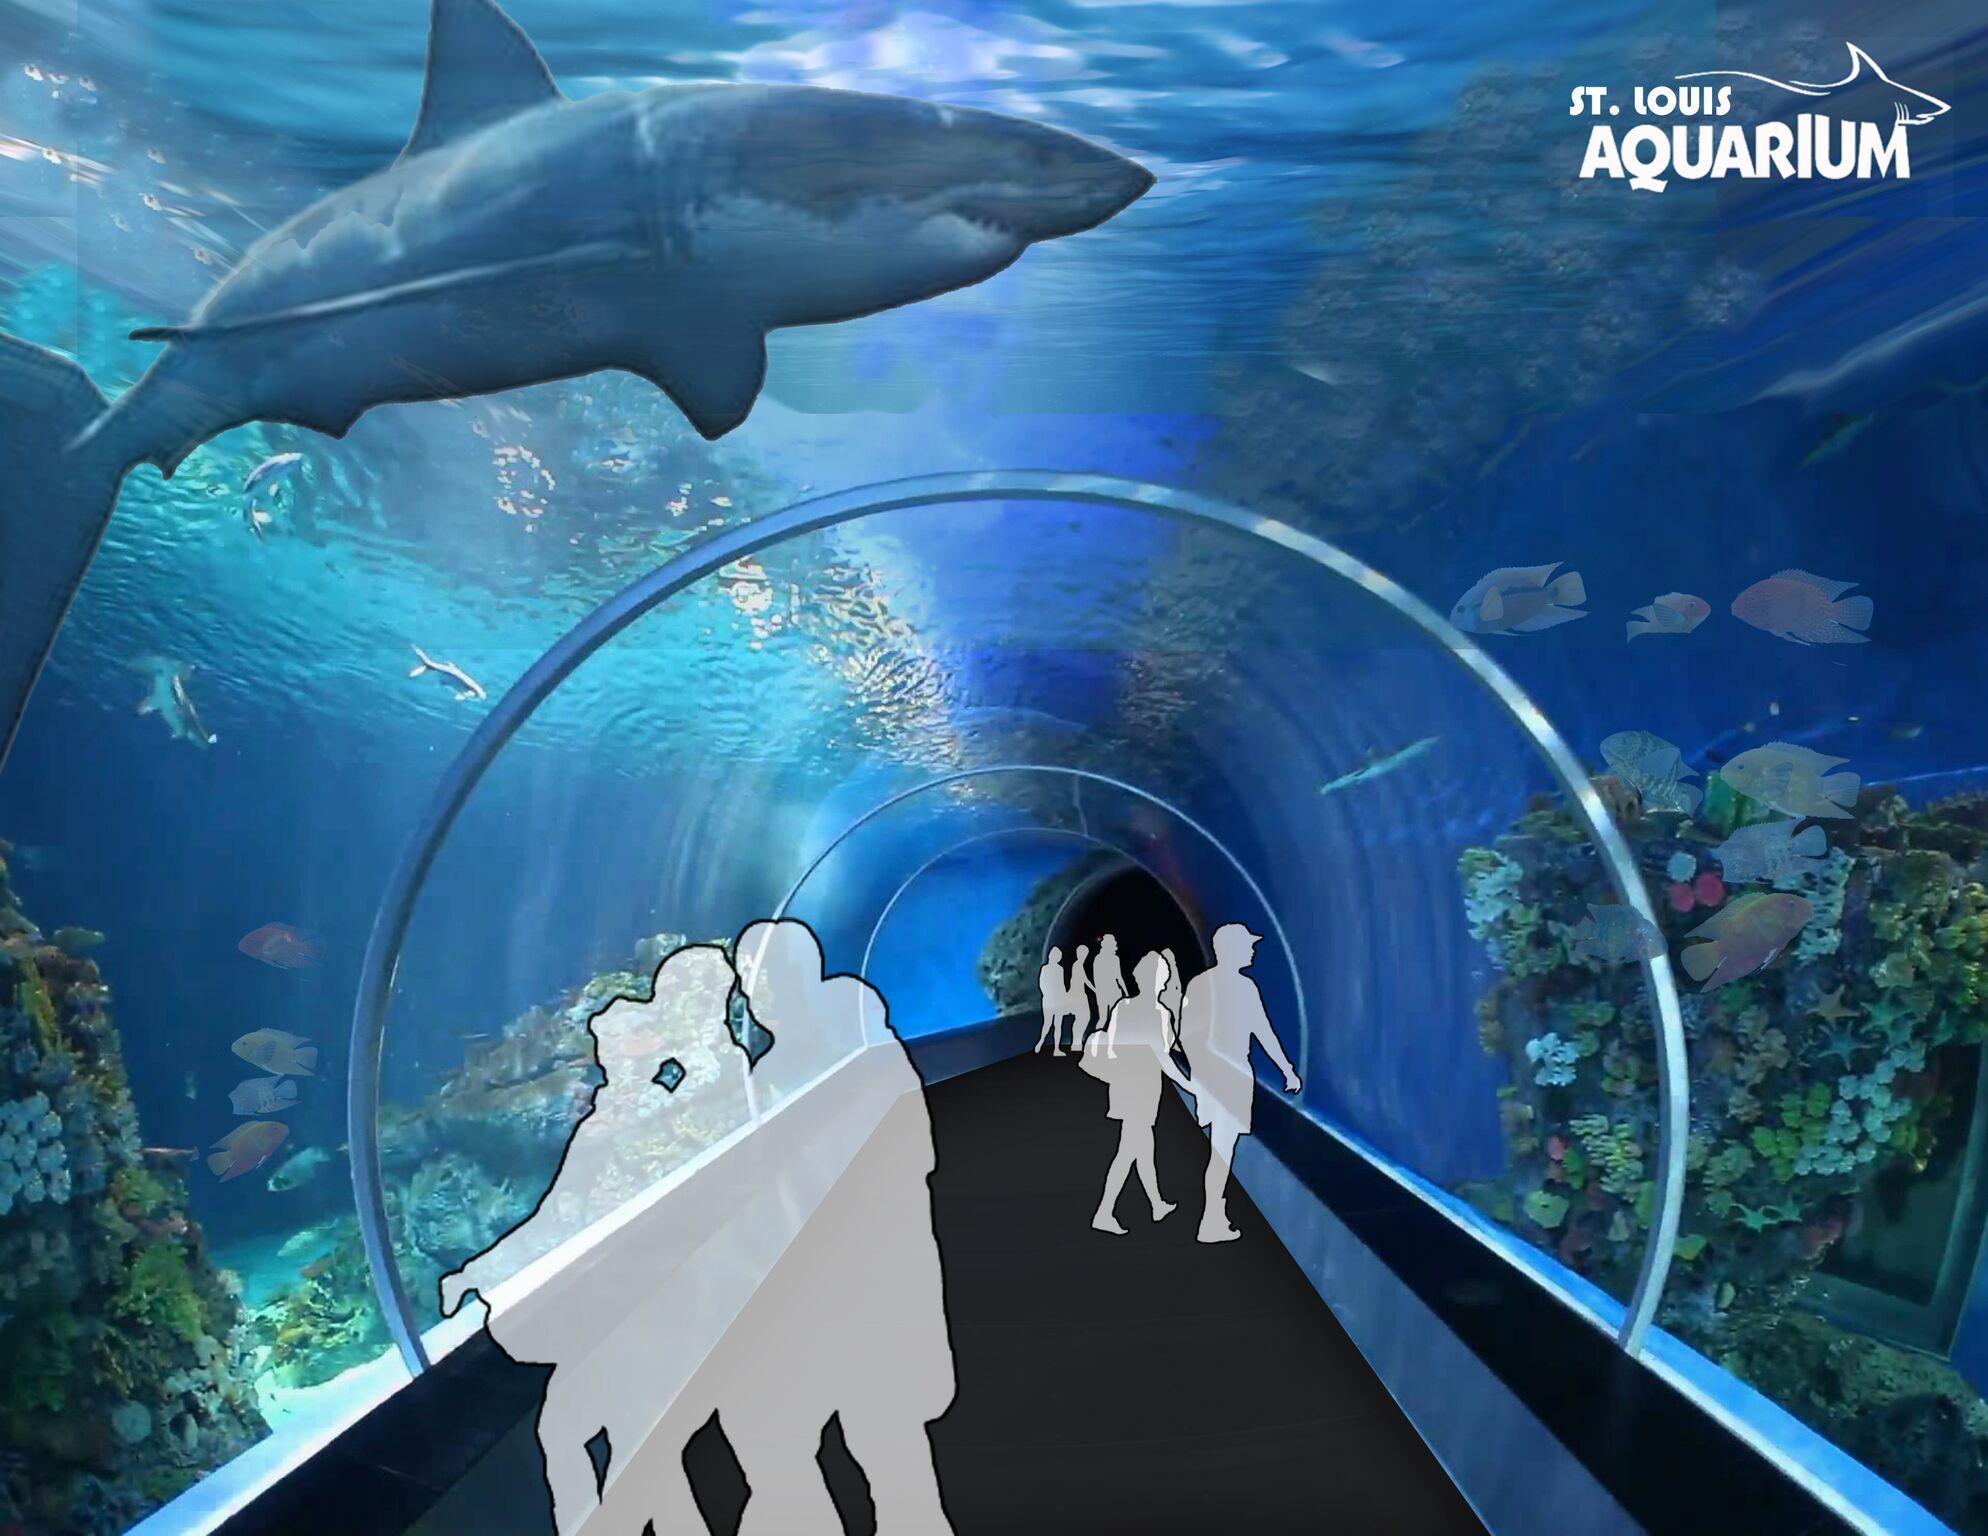 st louis aquarium shark bridge